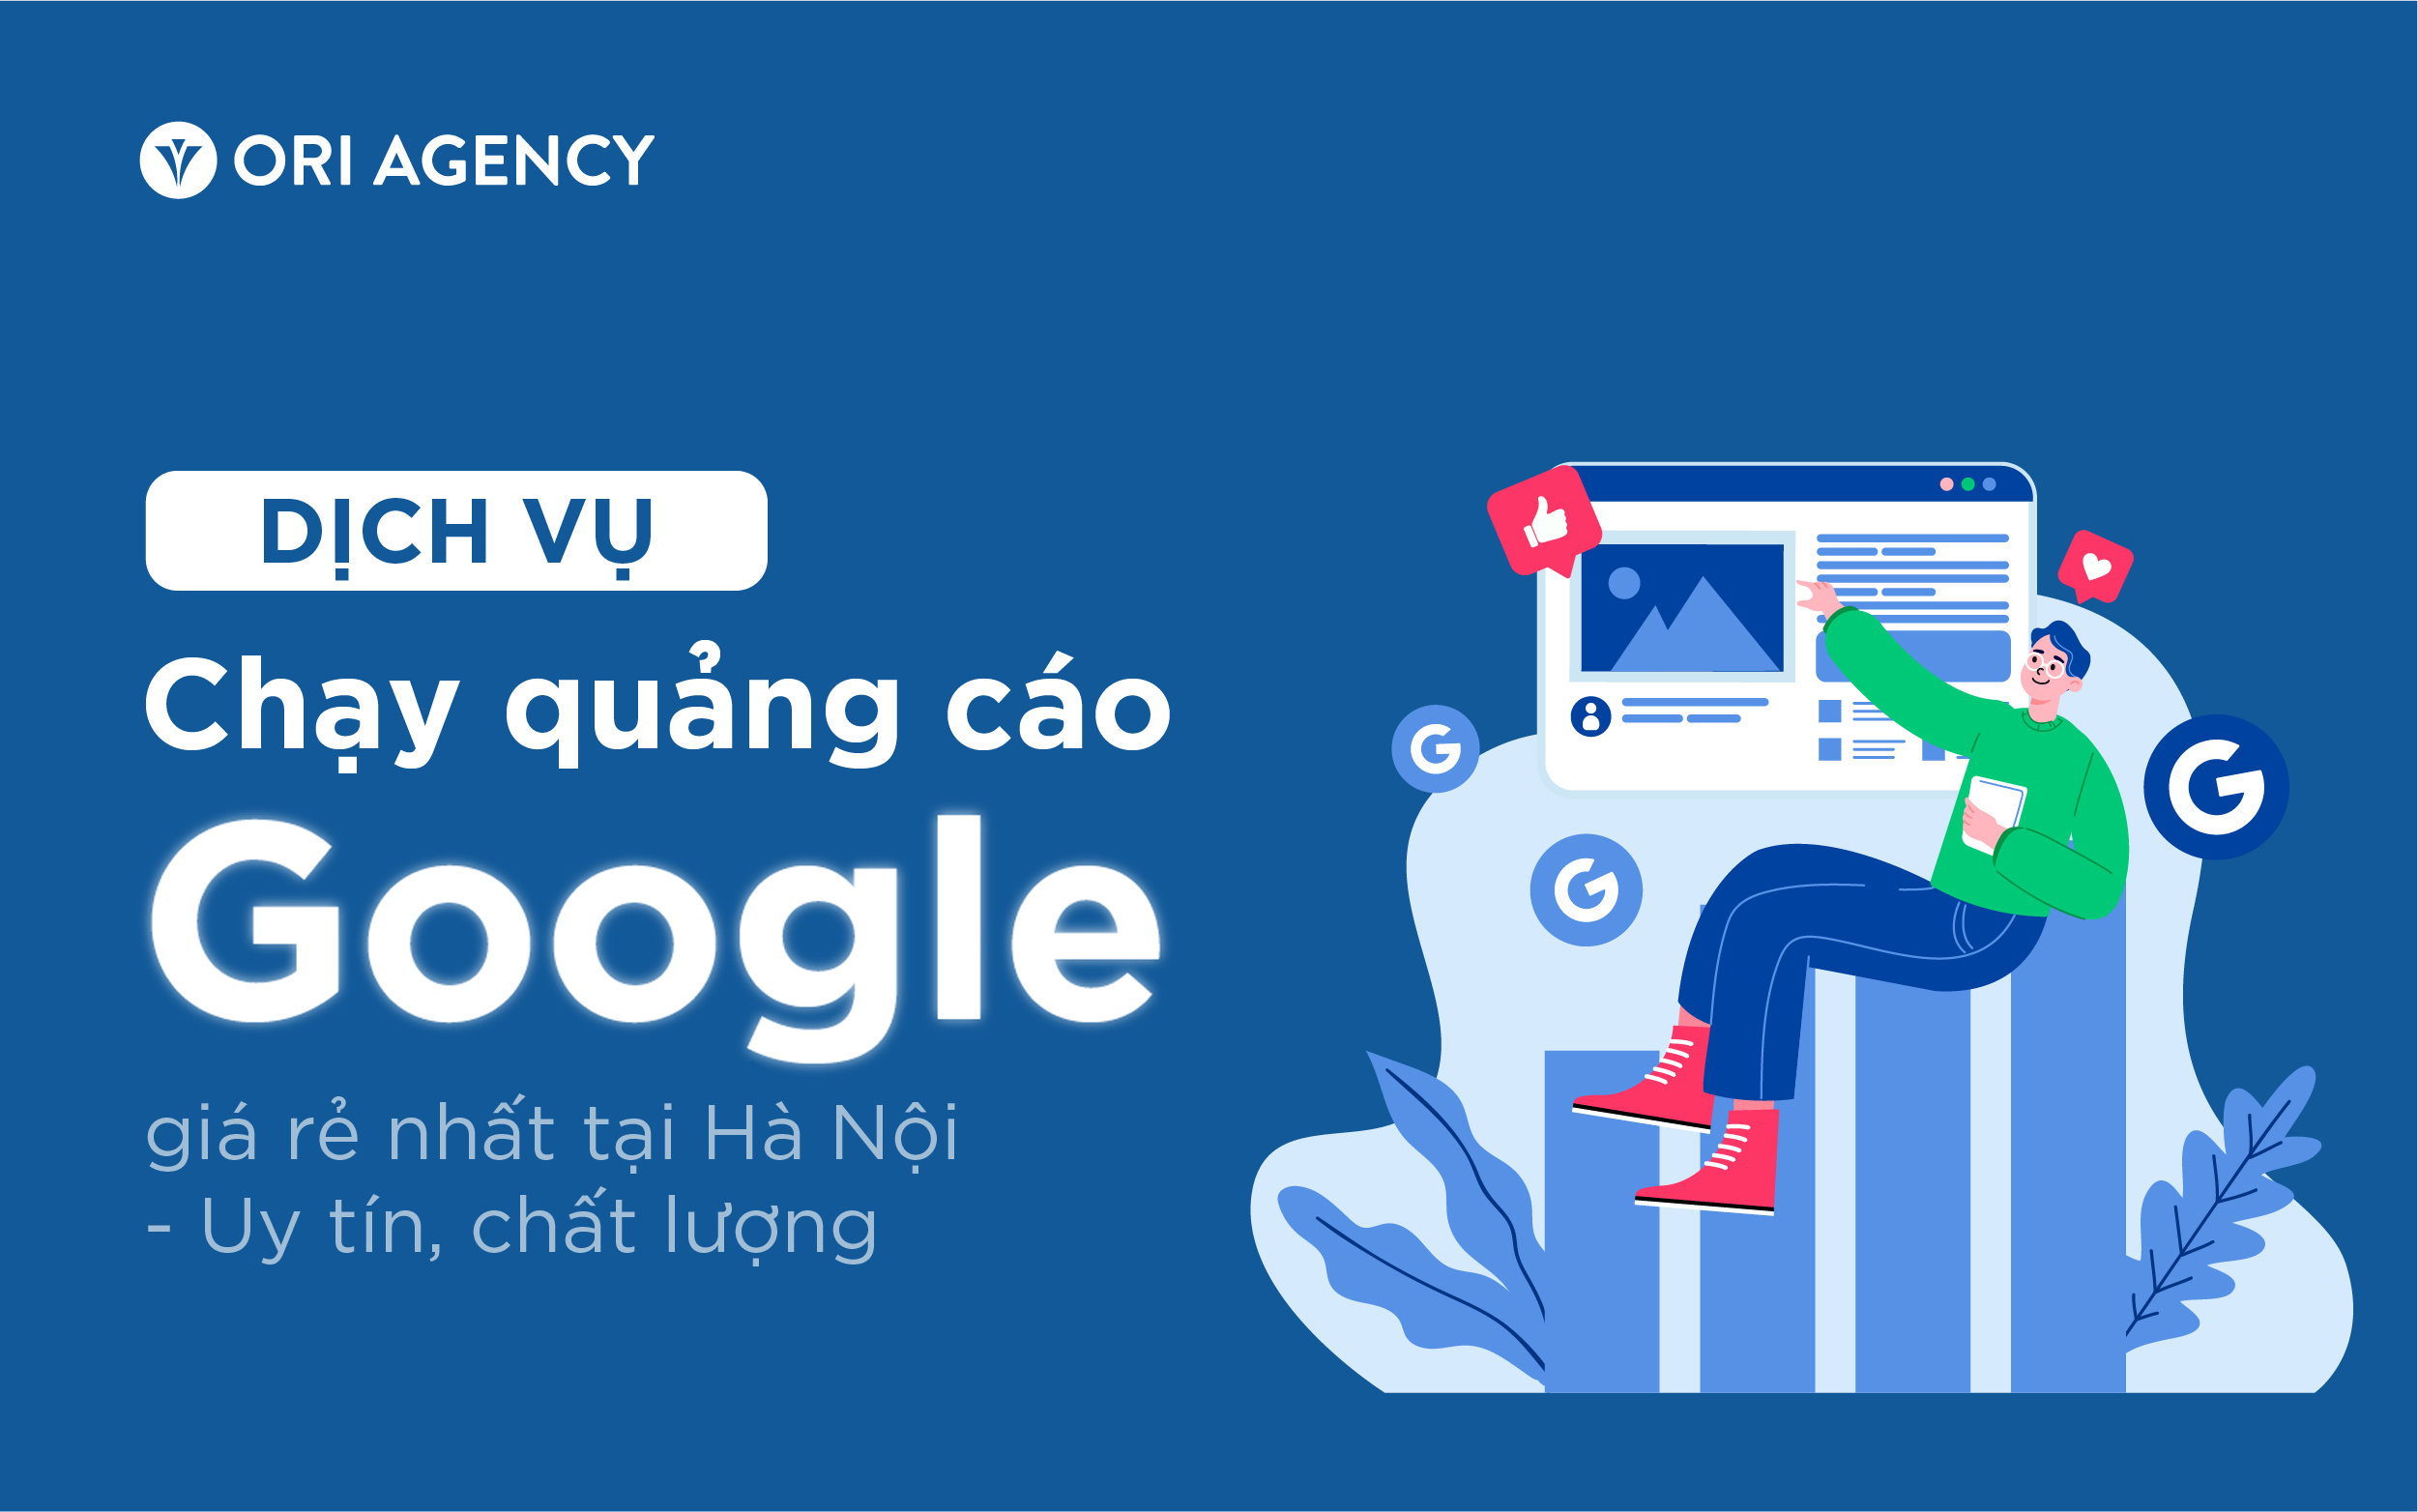 Dịch vụ chạy quảng cáo Google giá rẻ nhất tại Hà Nội - Uy tín, chất lượng